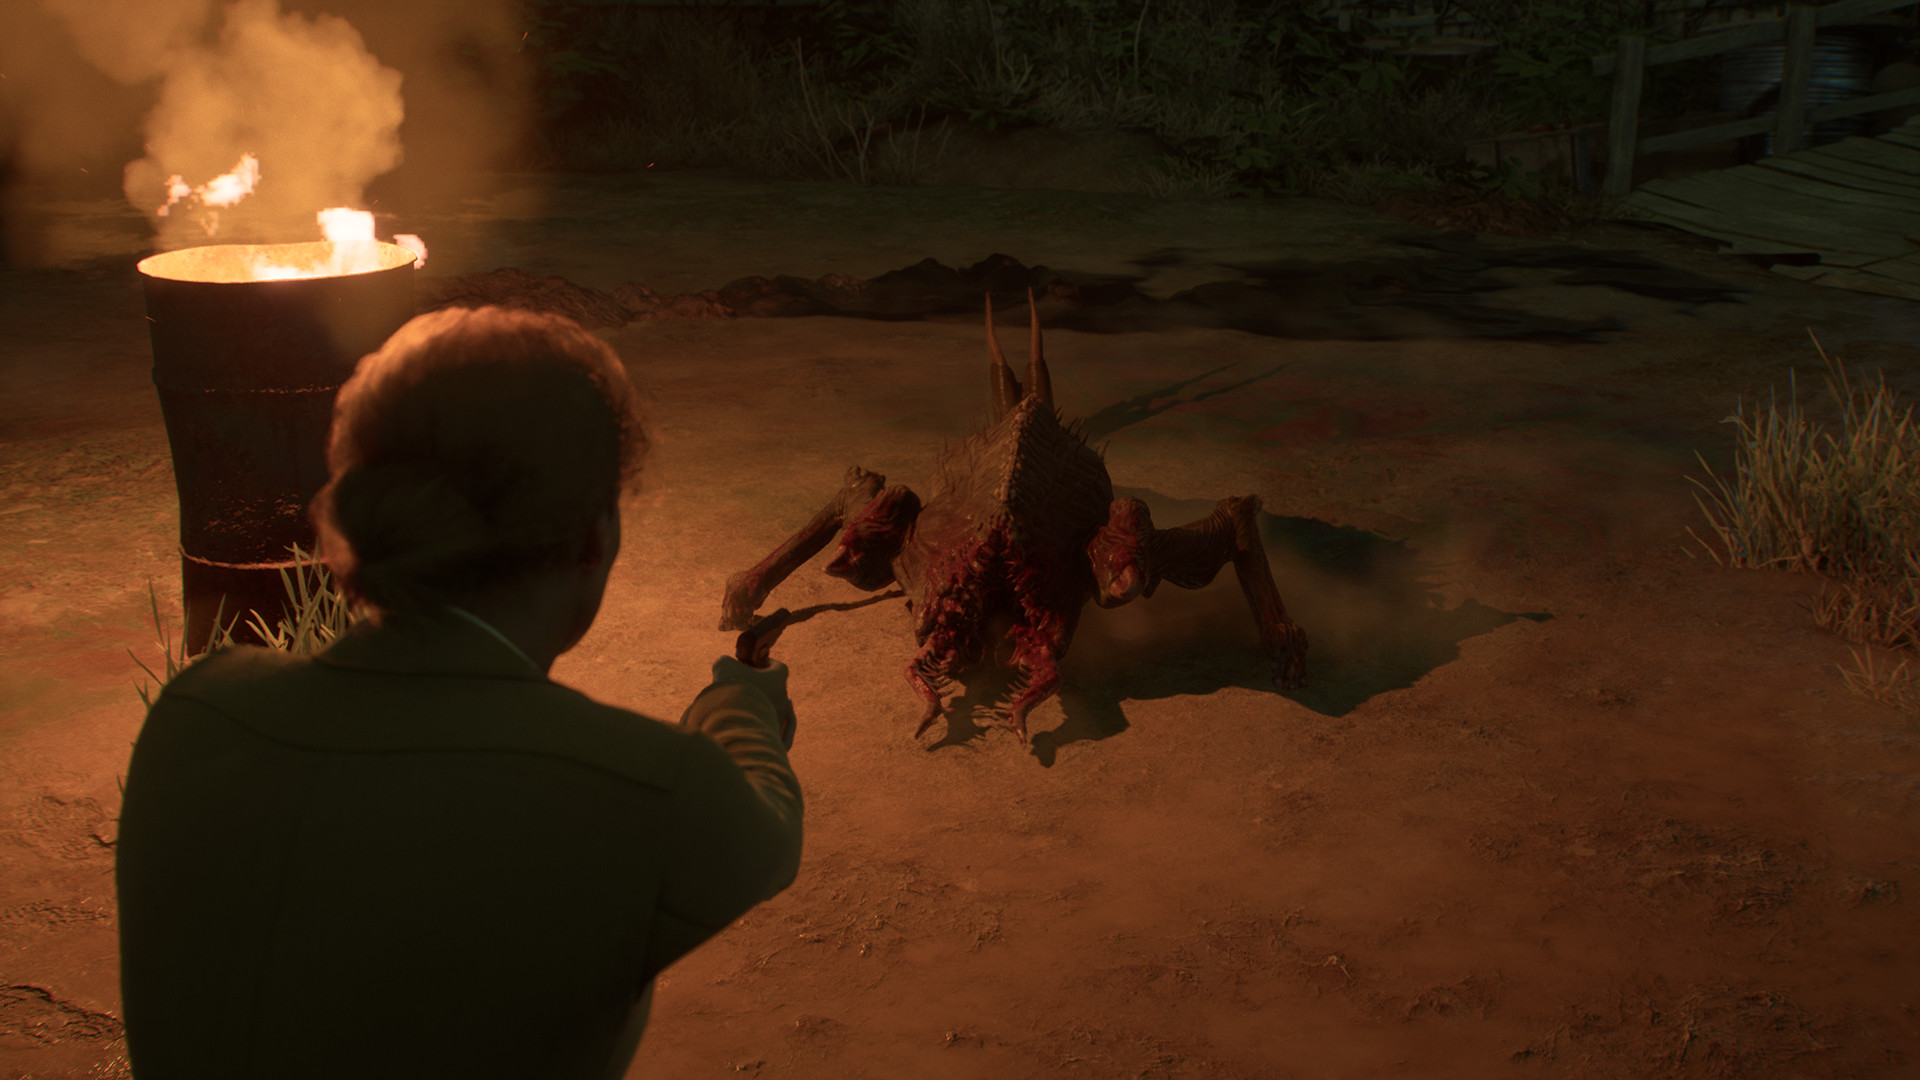 心理恐怖游戏《鬼屋魔影》重置版现已正式发售 获多半好评